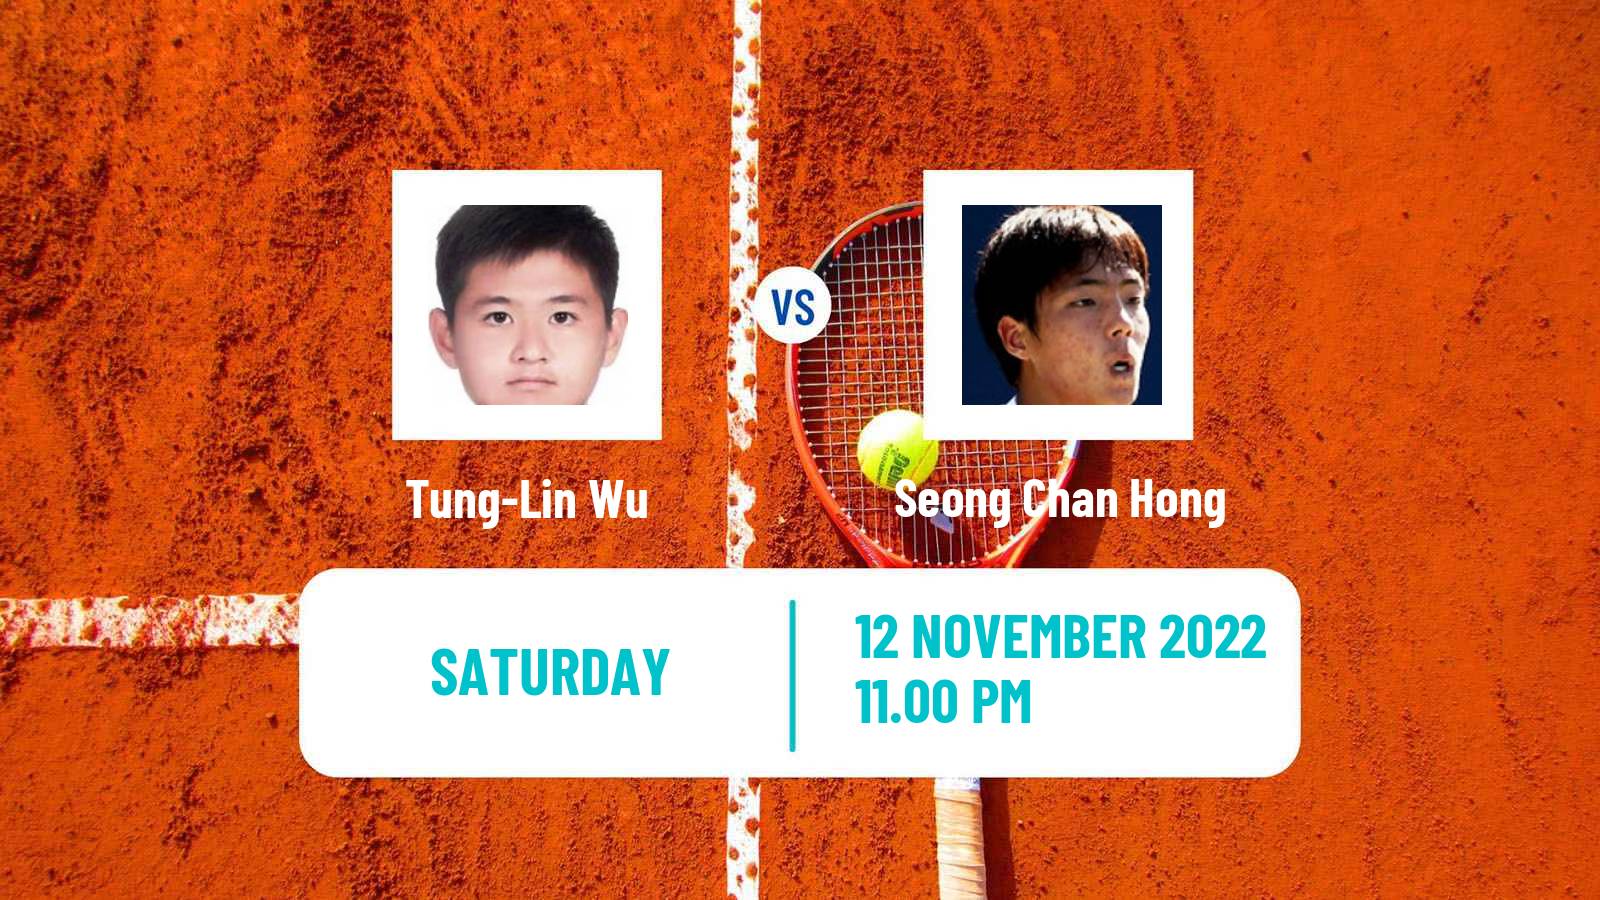 Tennis ATP Challenger Tung-Lin Wu - Seong Chan Hong